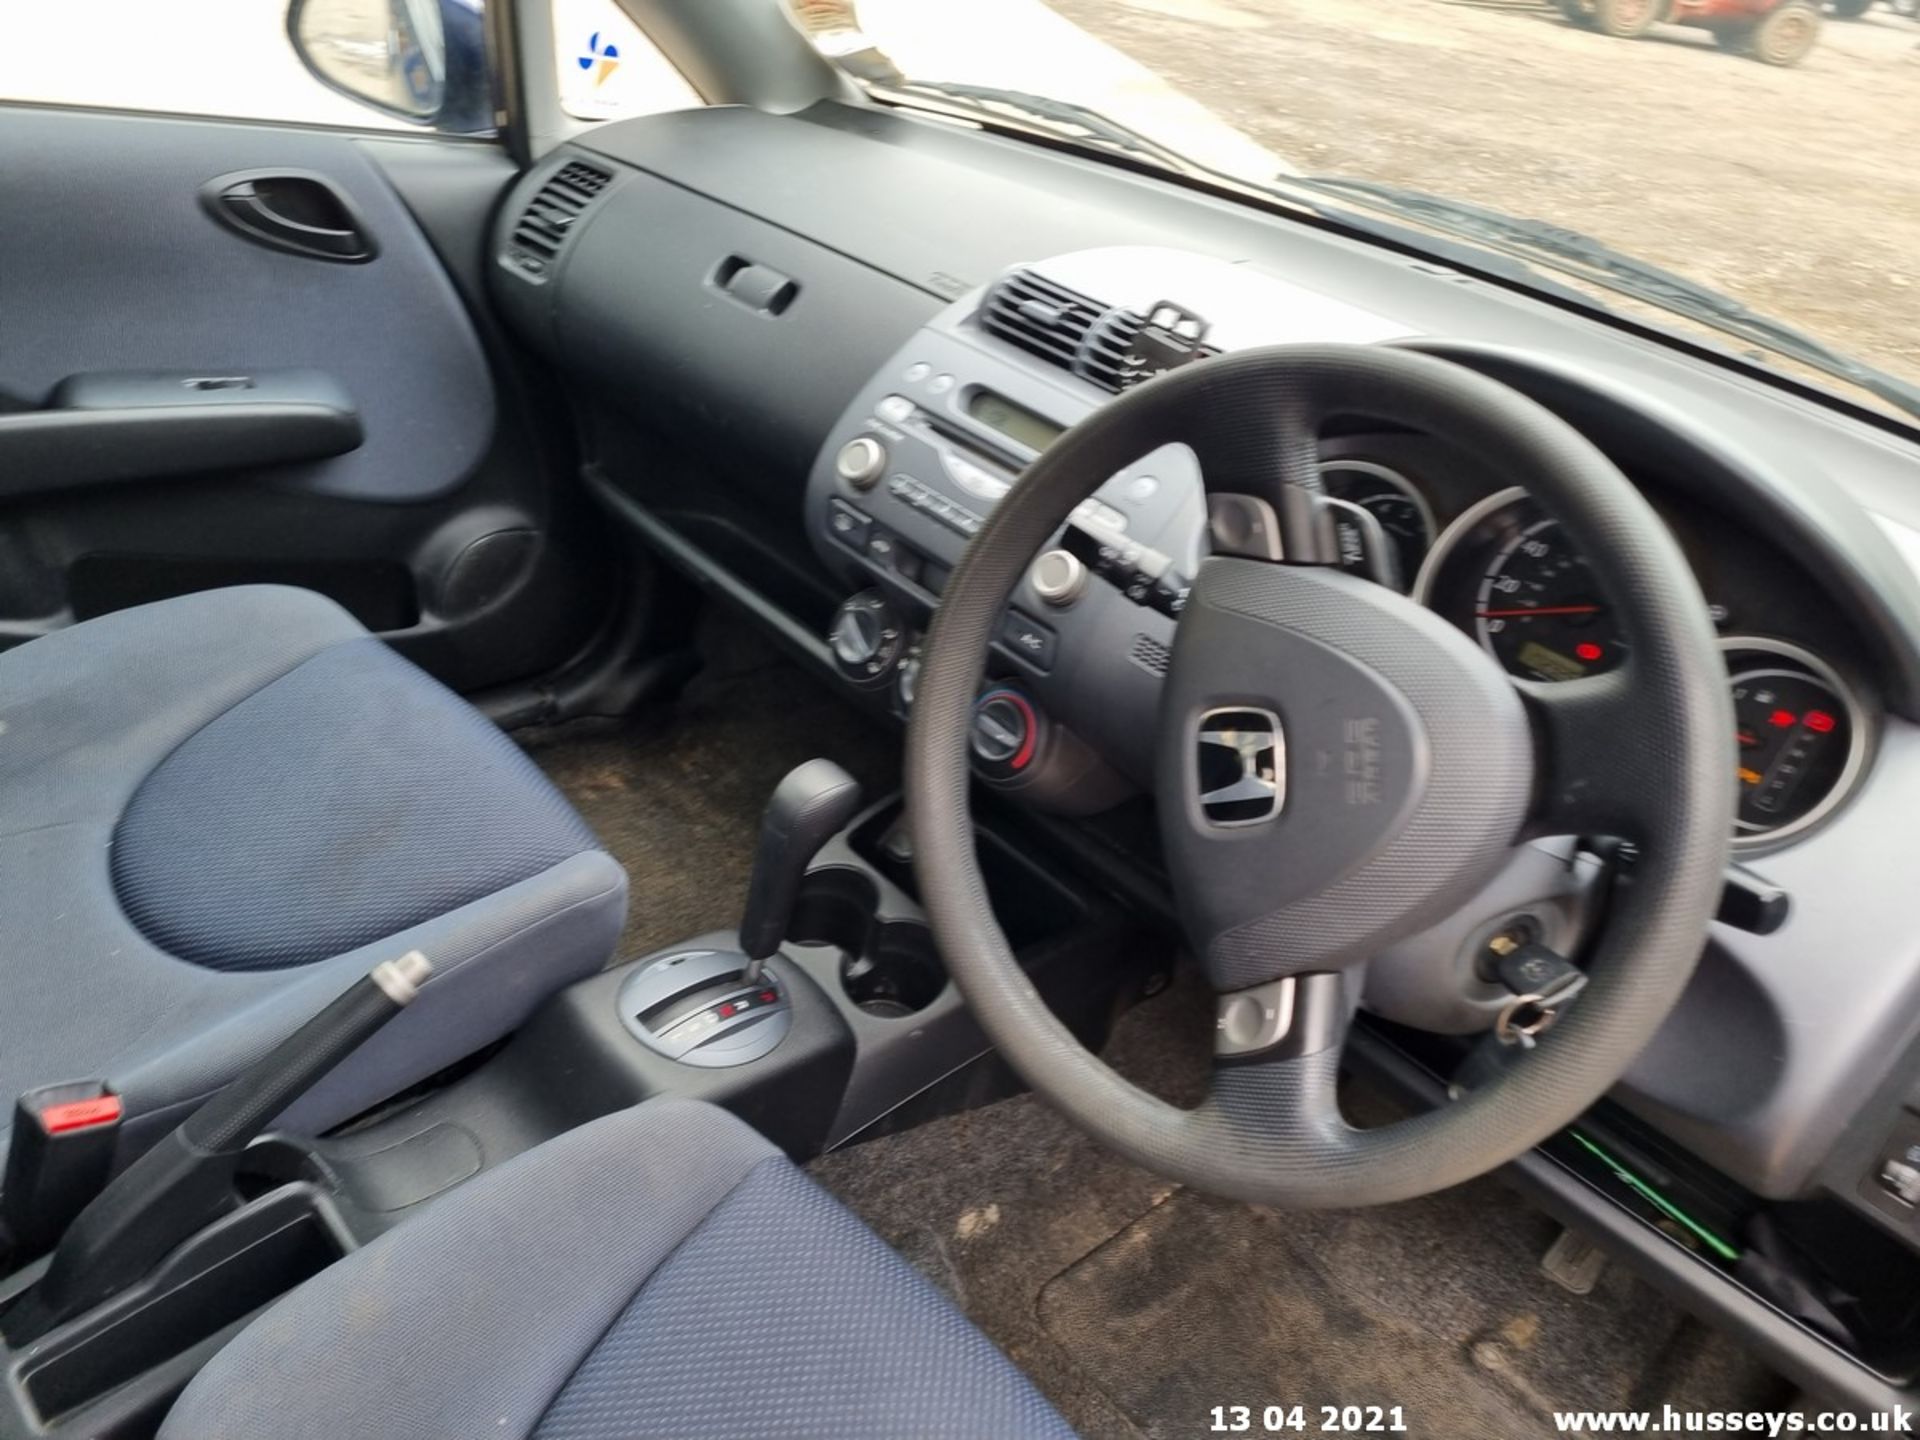 03/53 HONDA JAZZ SE CVT - 1339cc 5dr Hatchback (Blue, 172k) - Image 10 of 13